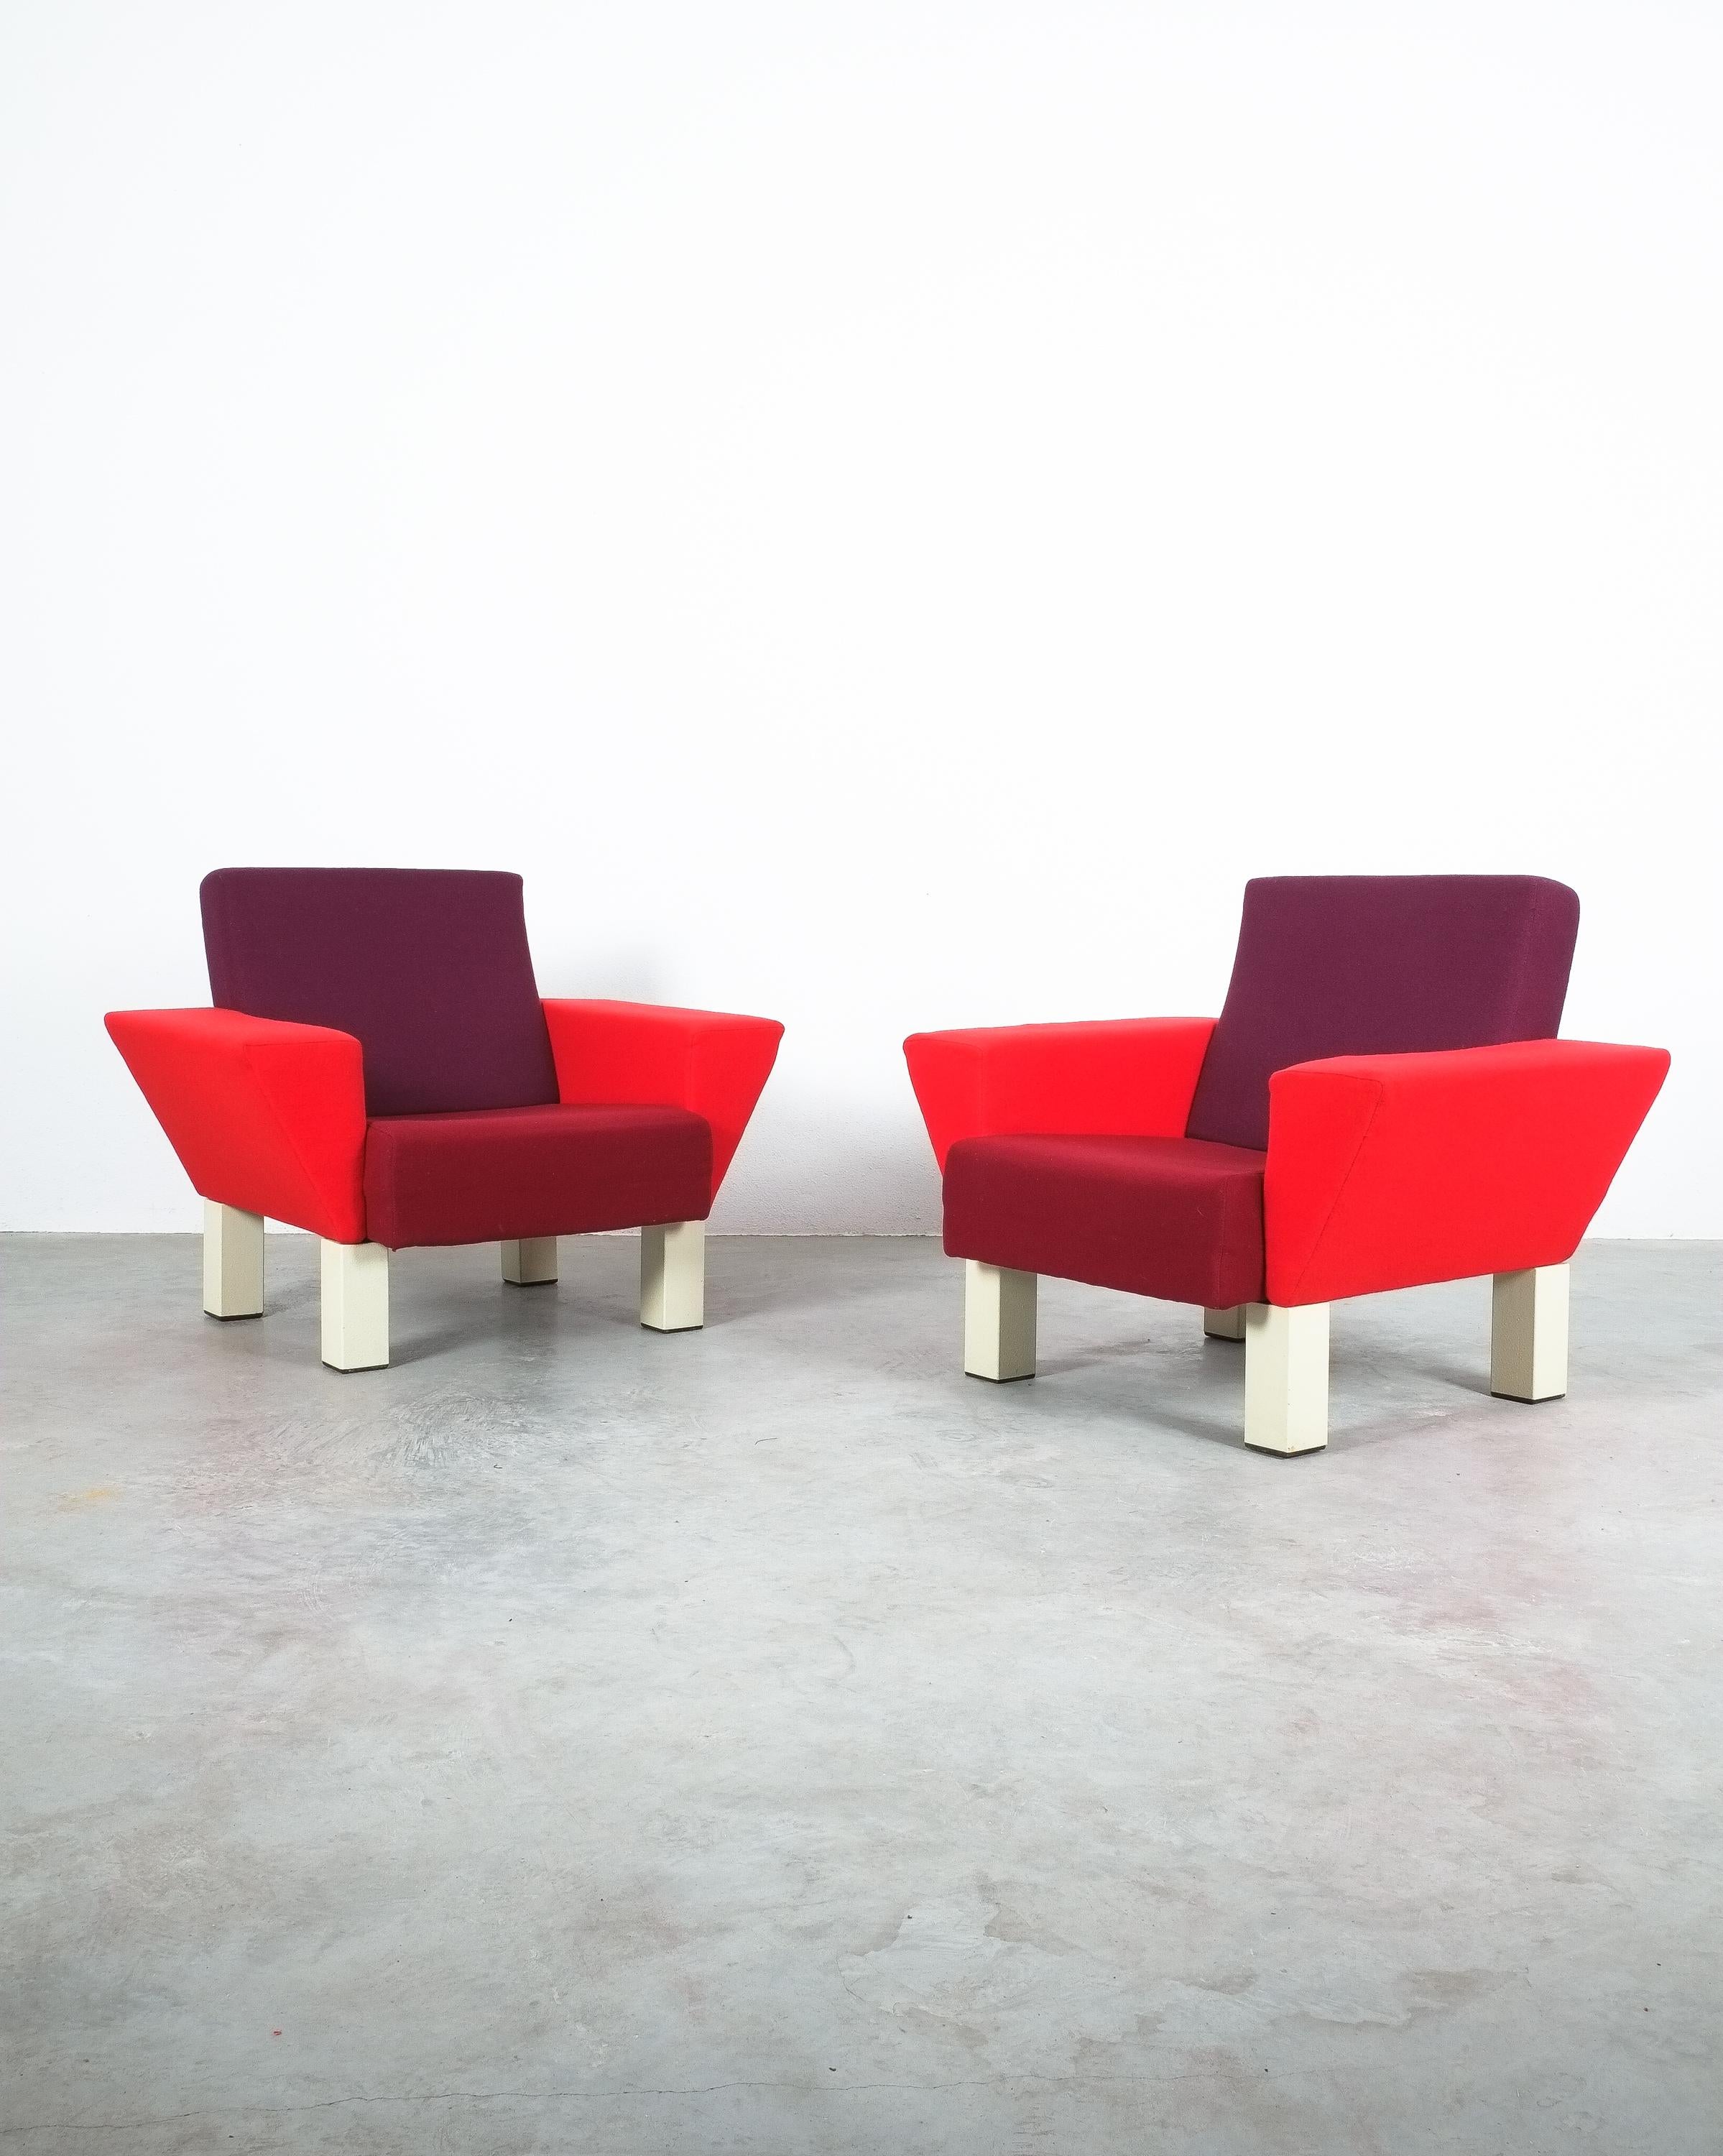 Rare paire de fauteuils vintage 'Westside' par Ettore Sottsass pour Condit, 1983 en très bon état.

L'emblématique façade ouest a été conçue par Ettore Sottsass en 1983. Chaises surdimensionnées élégantes et très confortables en 3 différentes